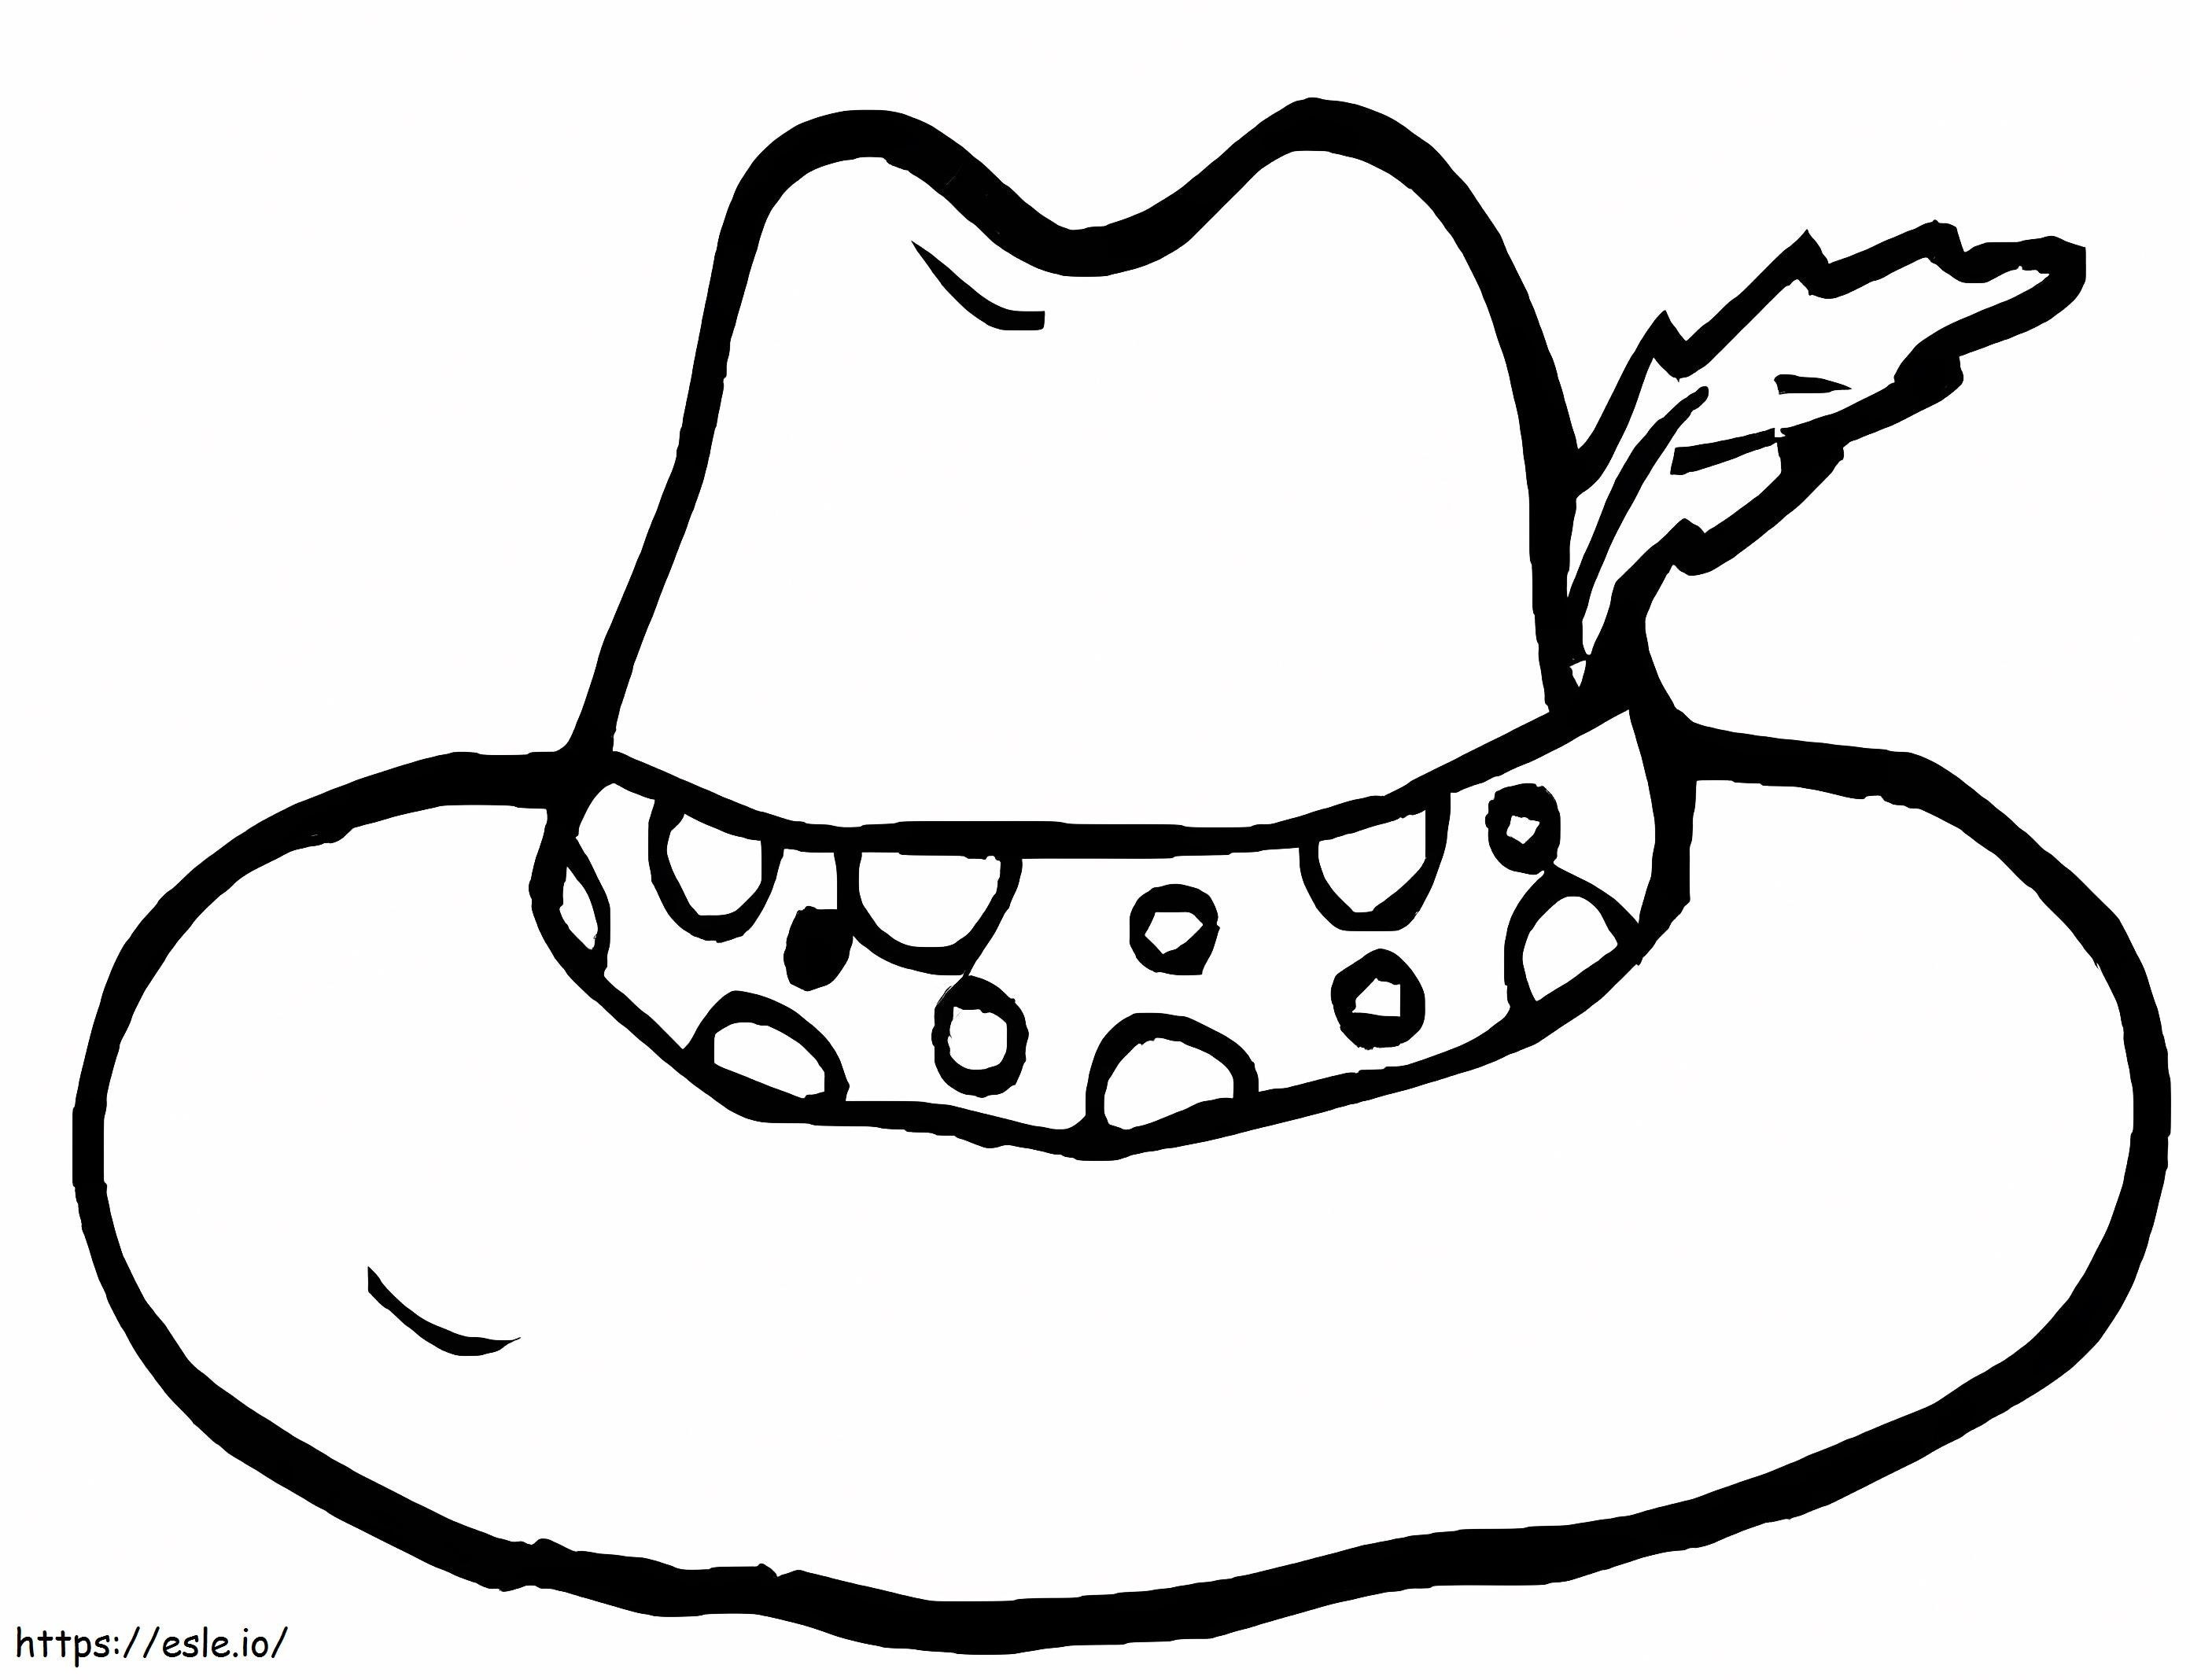 Cowboy-Hut ausmalbilder